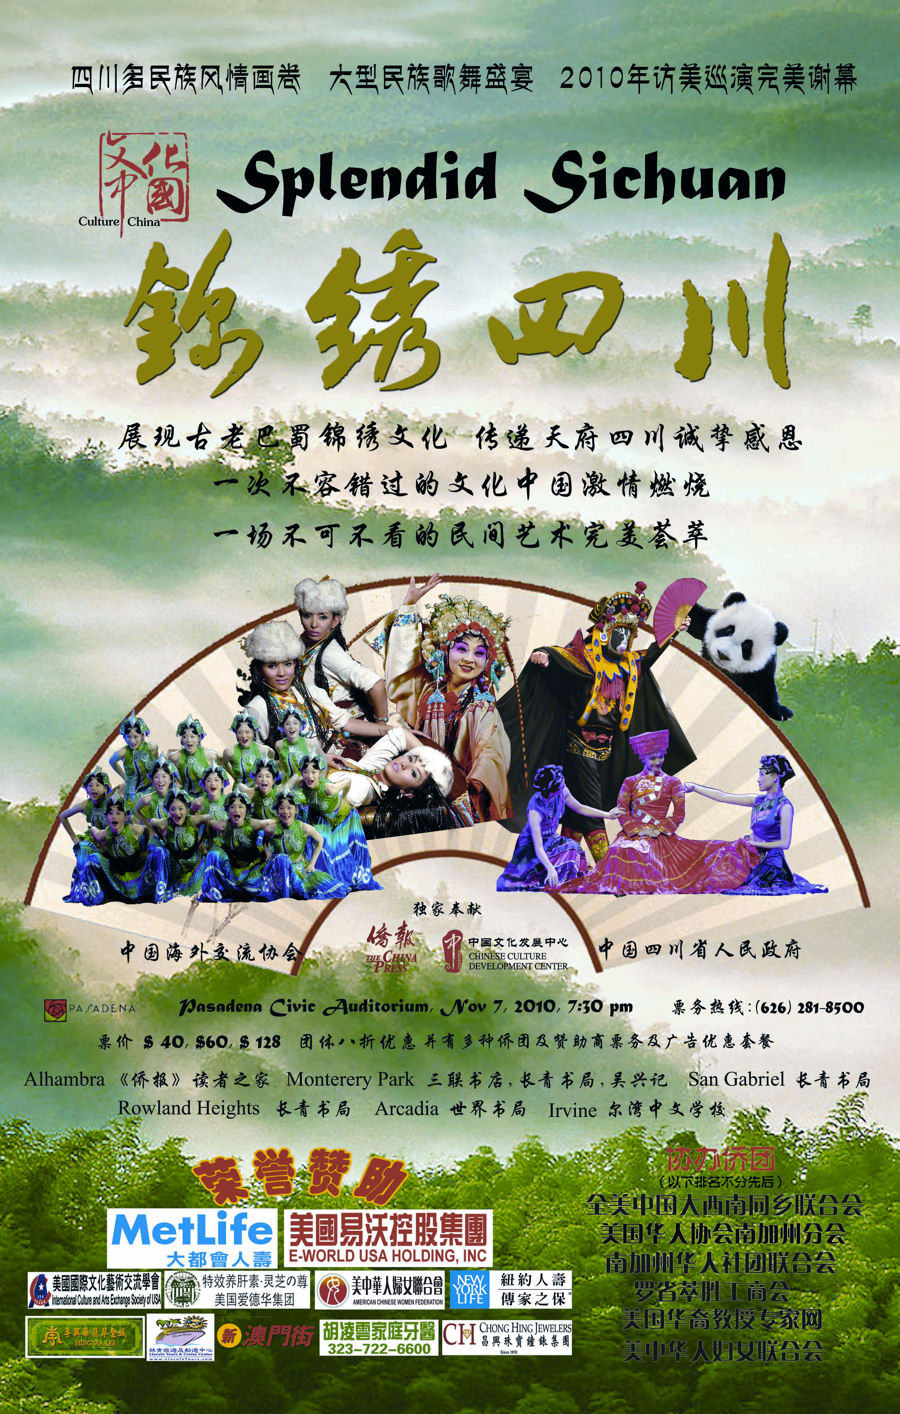 美国华裔教授专家网协办大型民族歌舞的盛宴 -“锦绣四川”访问洛杉矶演出（11/7 Pasadena）